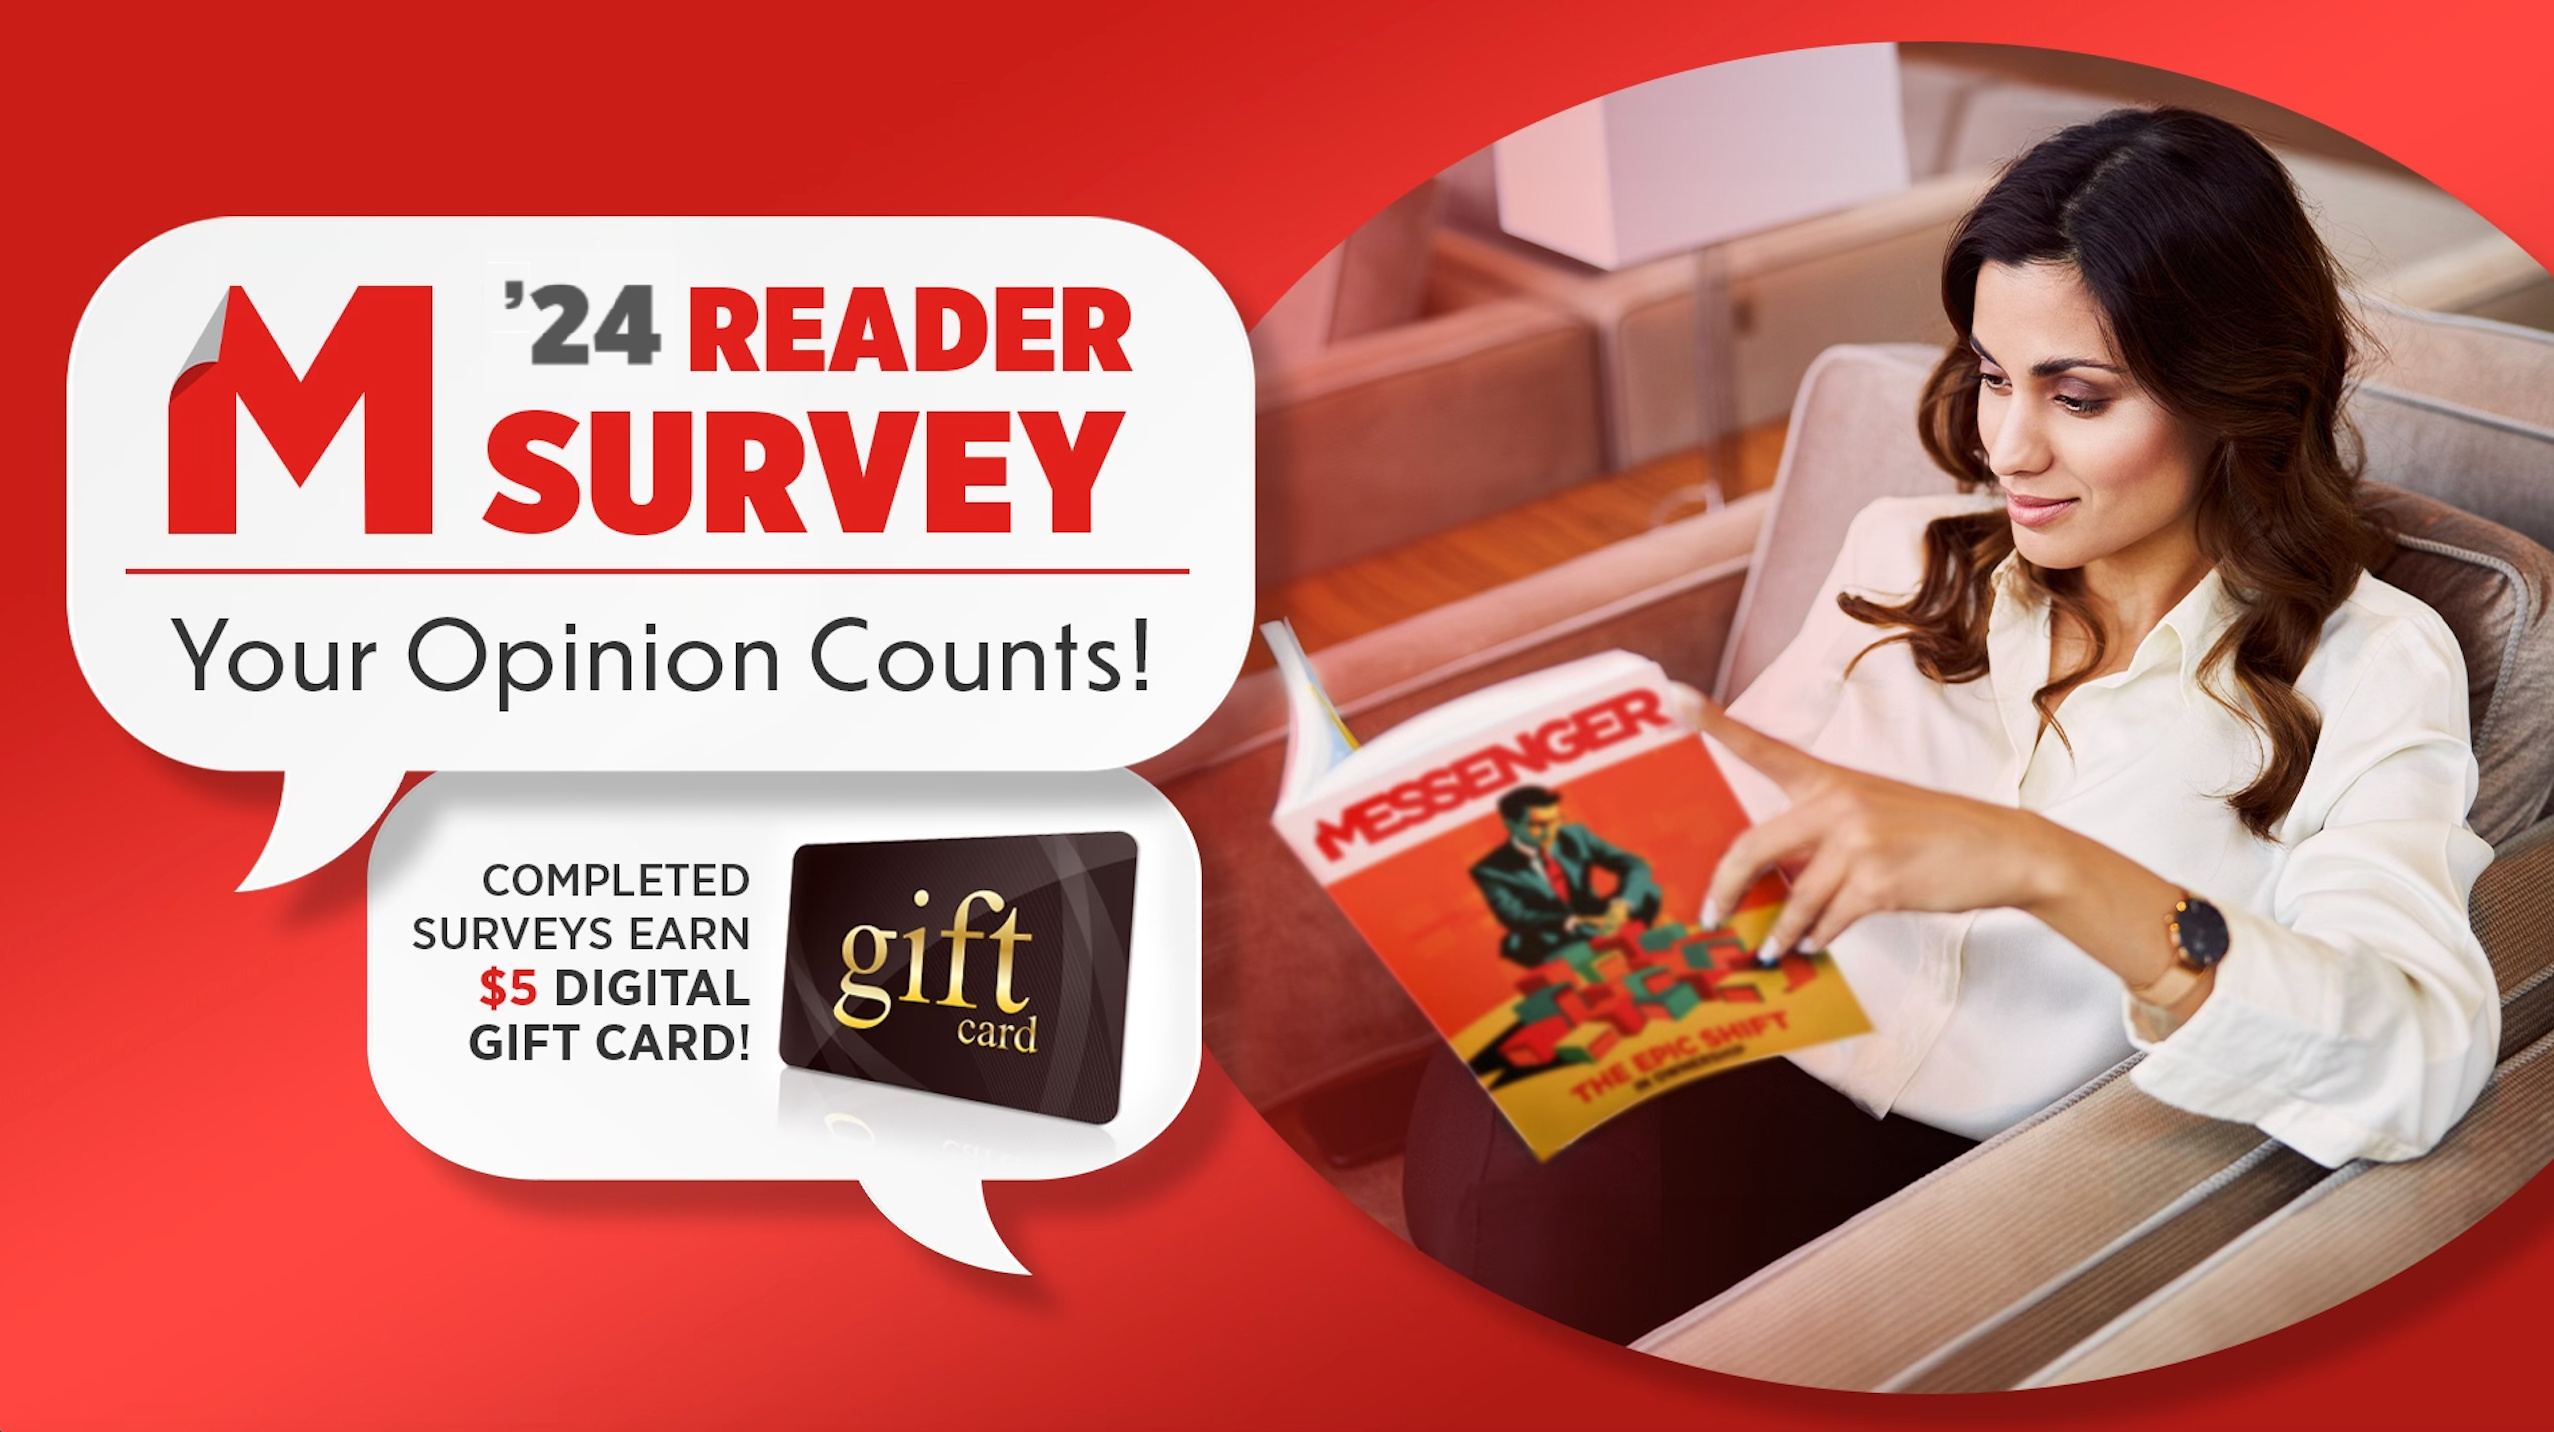 Reader Survey Social-1